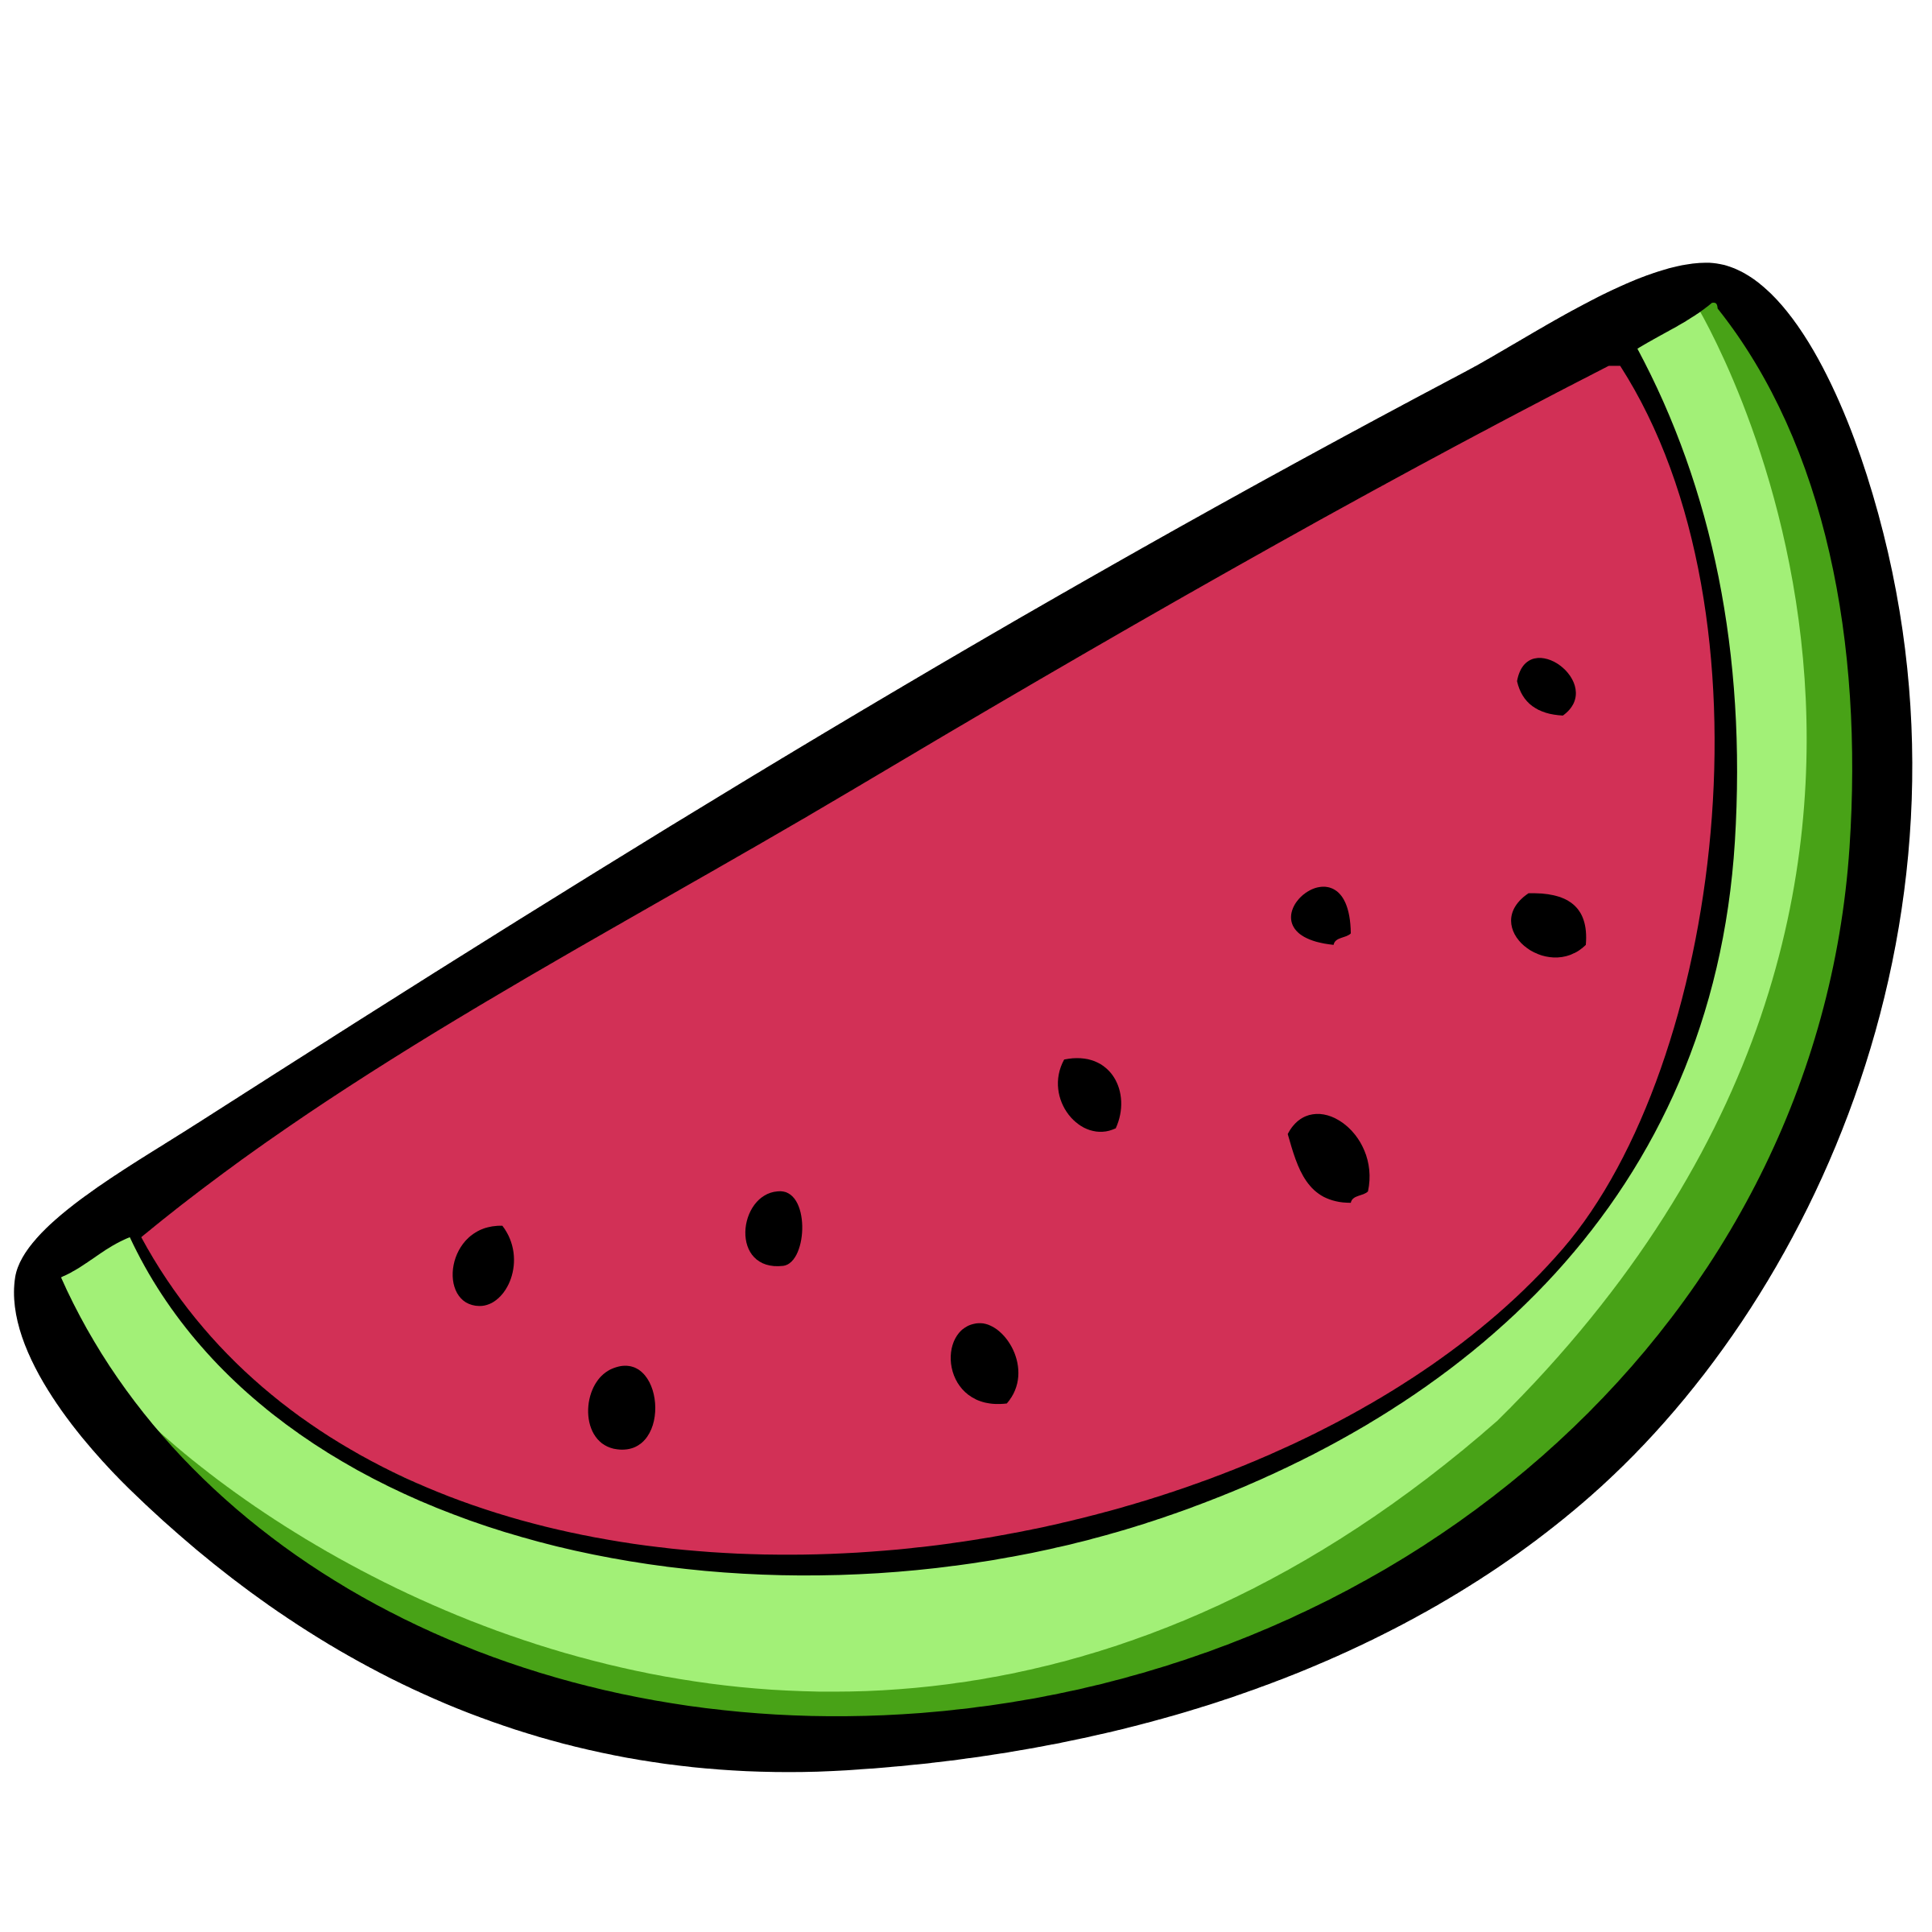 free-watermelon-border-cliparts-download-free-watermelon-border